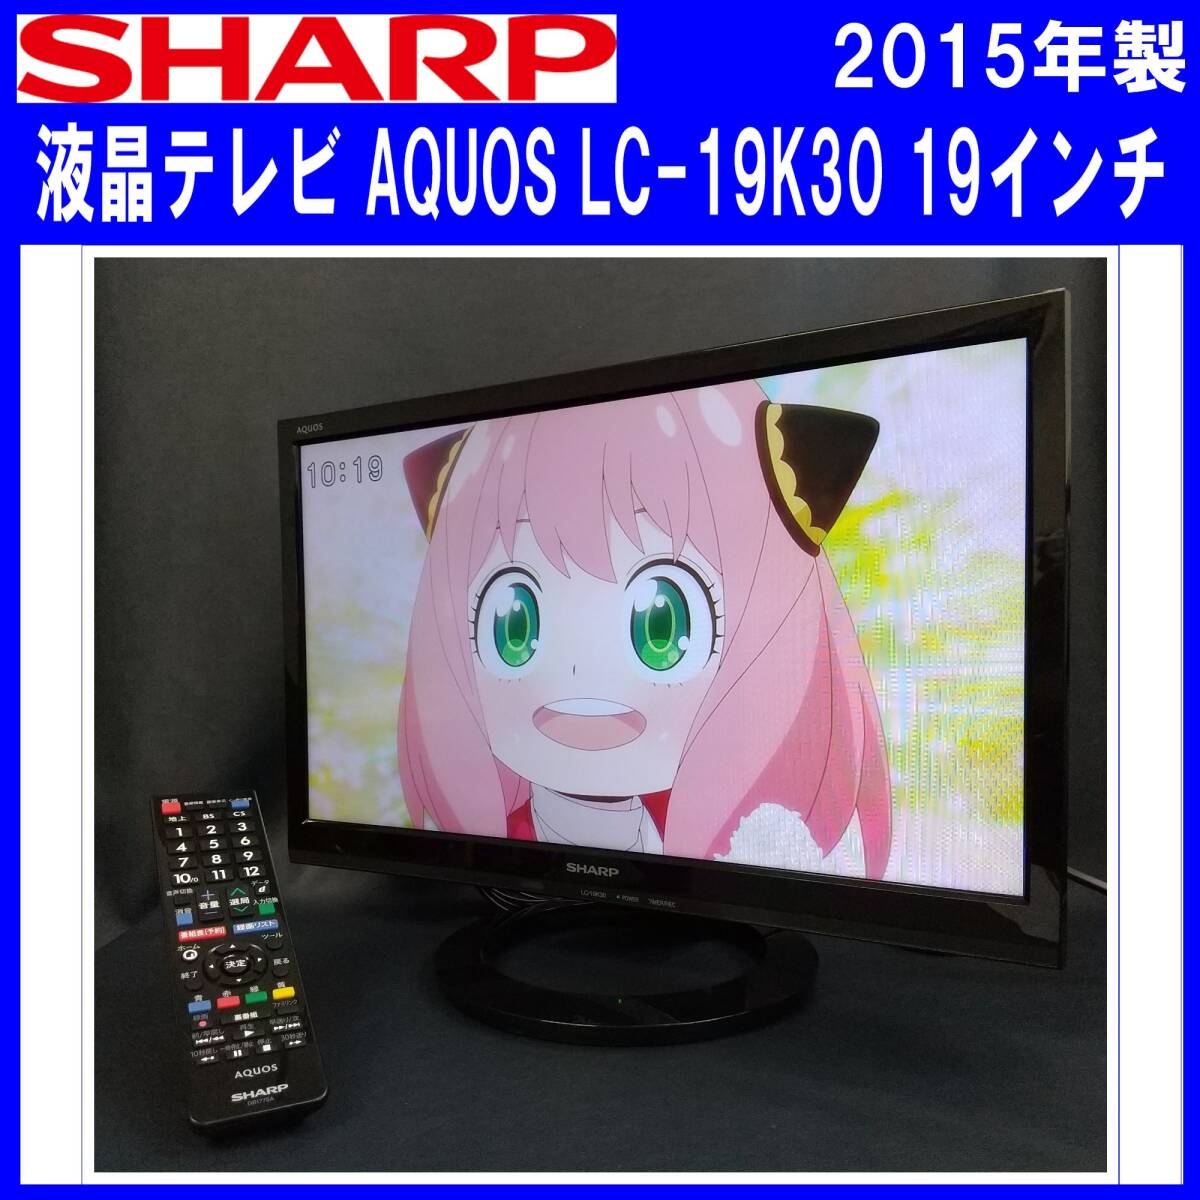 E0DM0123/SHARP/シャープ/液晶テレビ/AQUOS/LC-19K30/19インチ/2015年製/B-CASカード付/ダブルチューナー搭載/外付けUSB-HDD録画対応_画像1